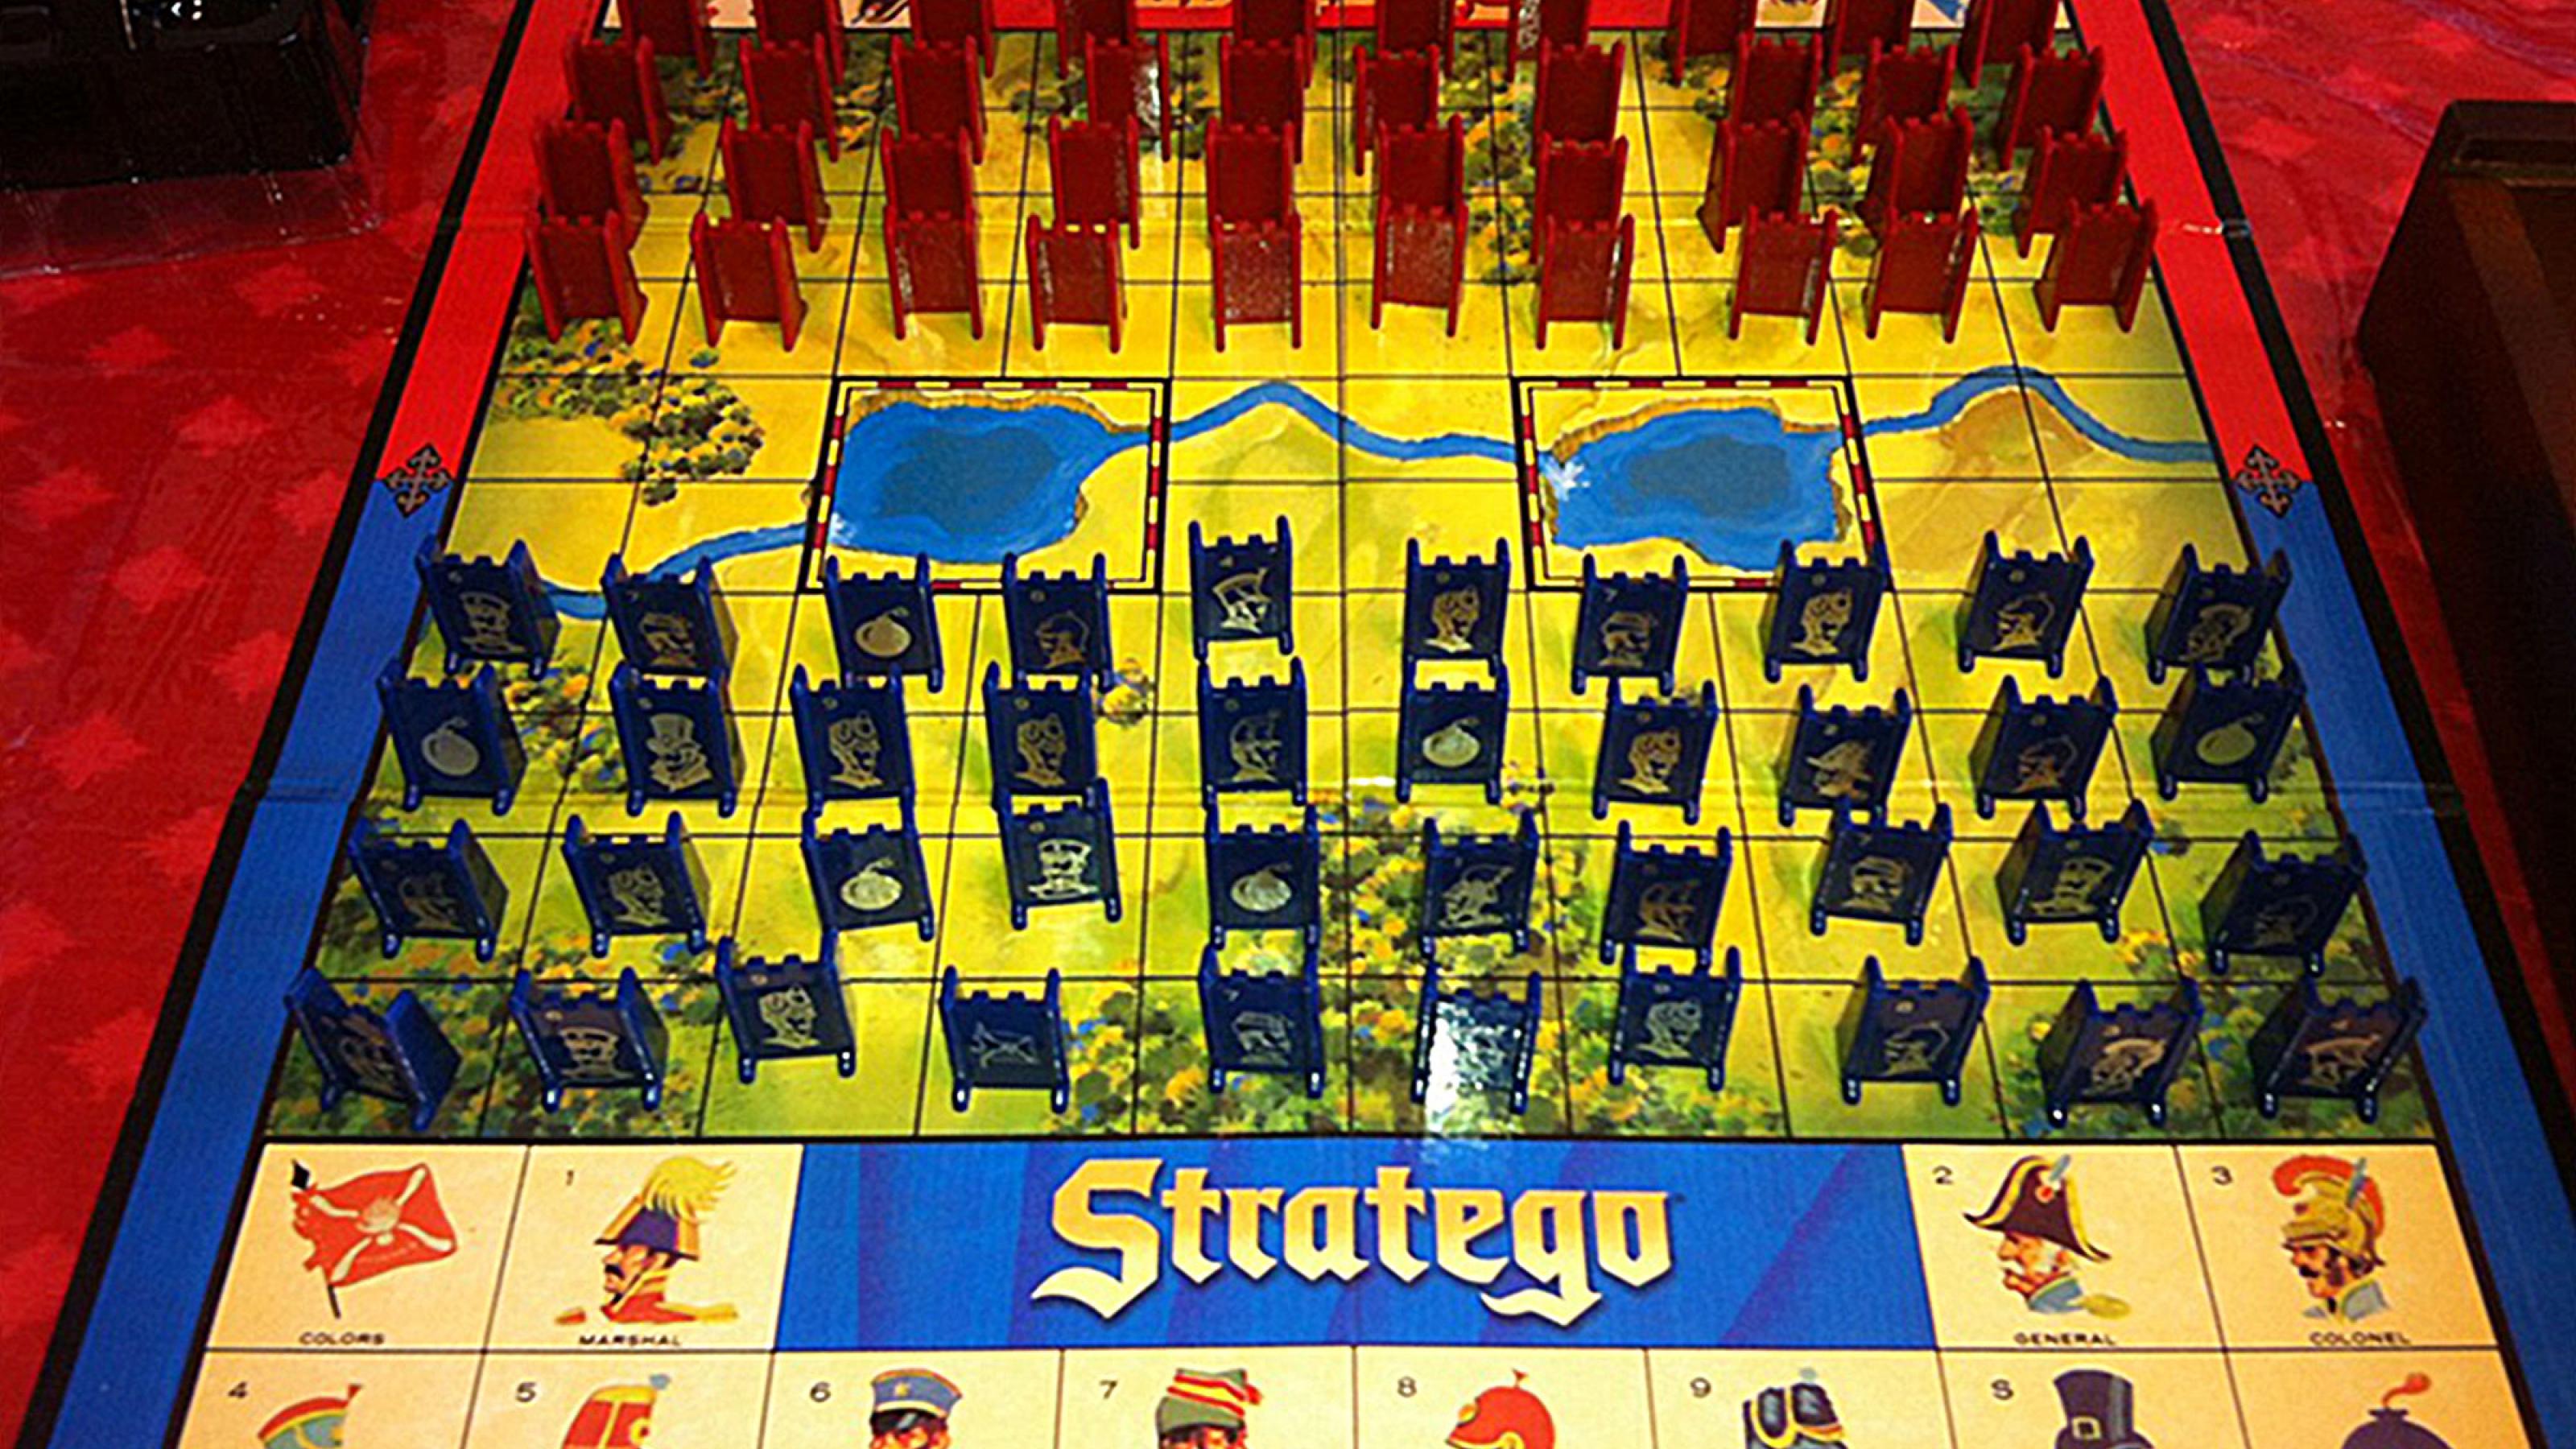 Das Brettspiel Stratego ist hochkomplex, weil es unfassbar viele Zugmöglichkeiten gibt und die Figuren noch dazu vor dem Gegner verborgen werden.